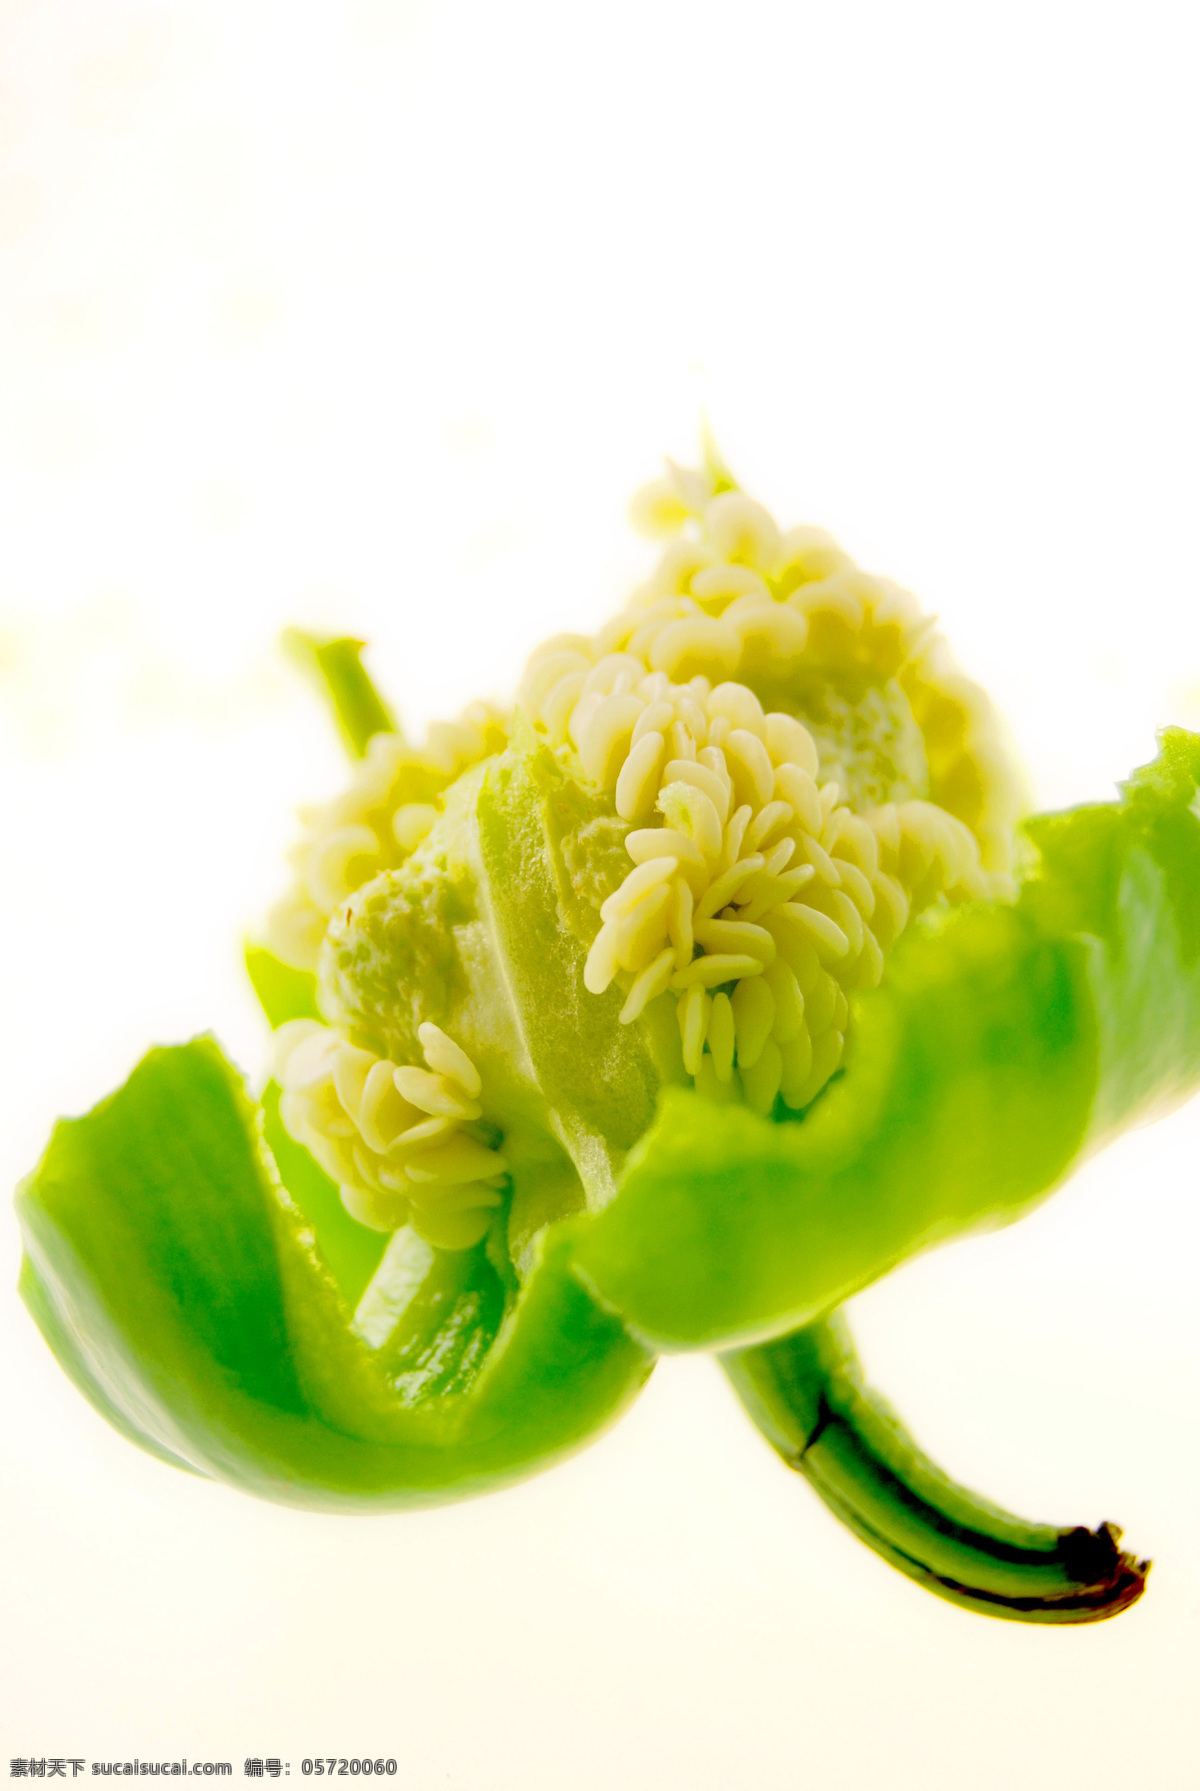 青椒免费下载 高清晰 青椒 生物世界 蔬菜 新鲜 蔬菜写真 青椒籽 绿色食物 风景 生活 旅游餐饮